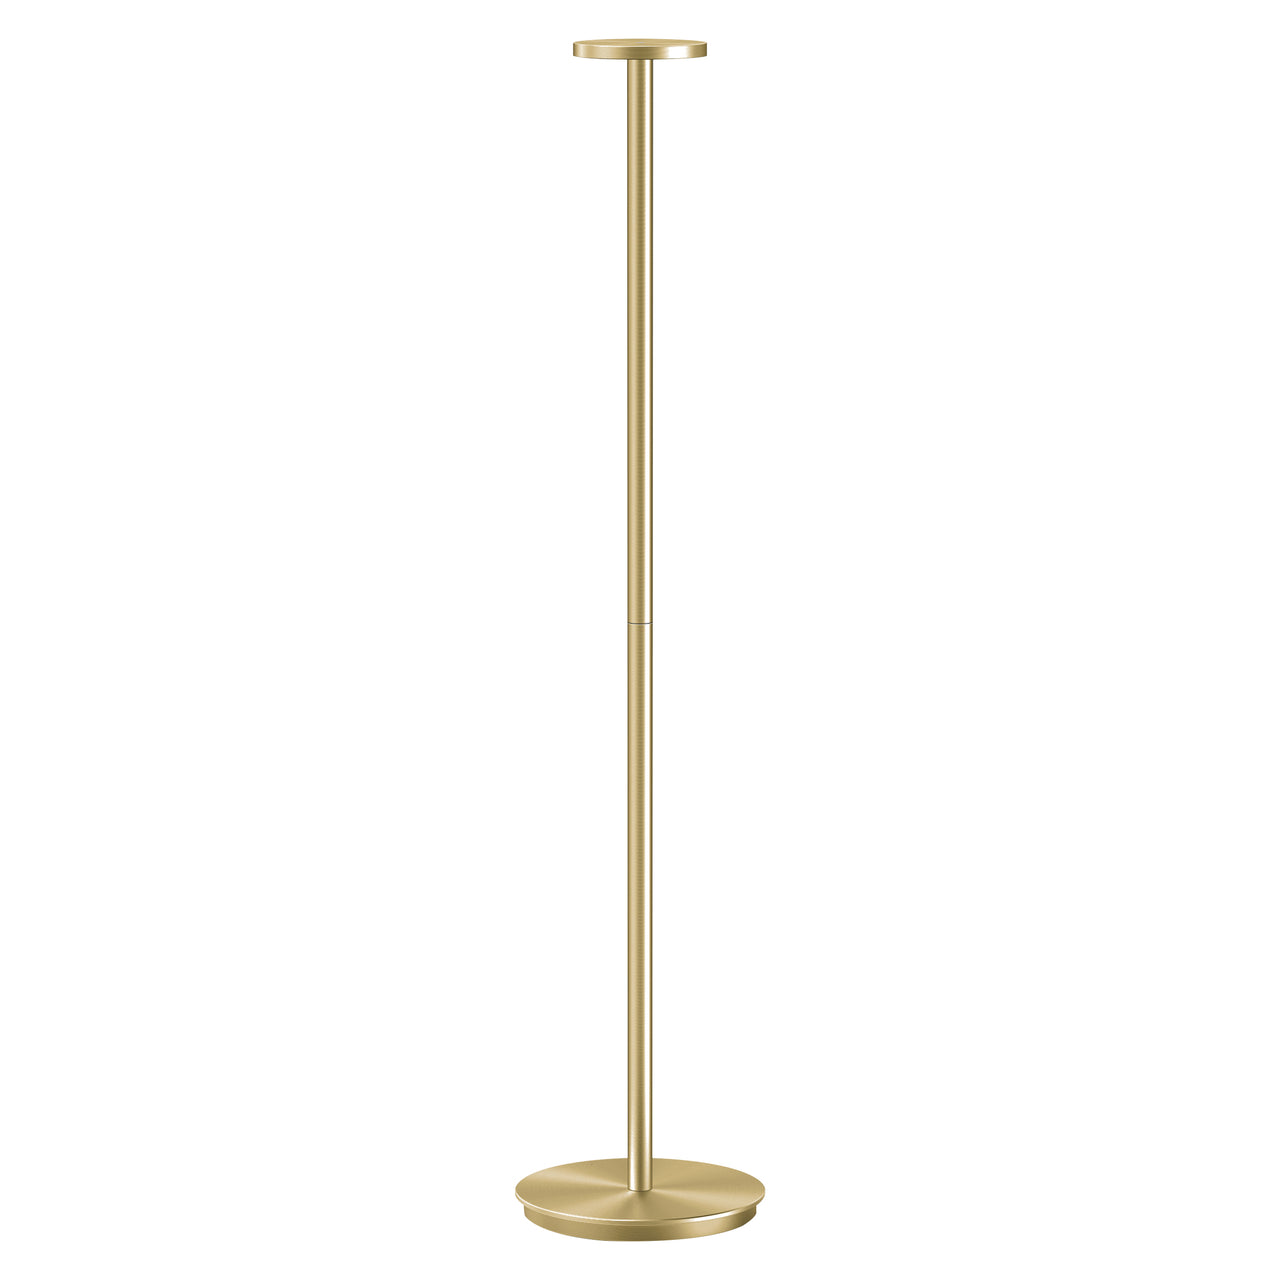 Luci Floor Lamp: Brass